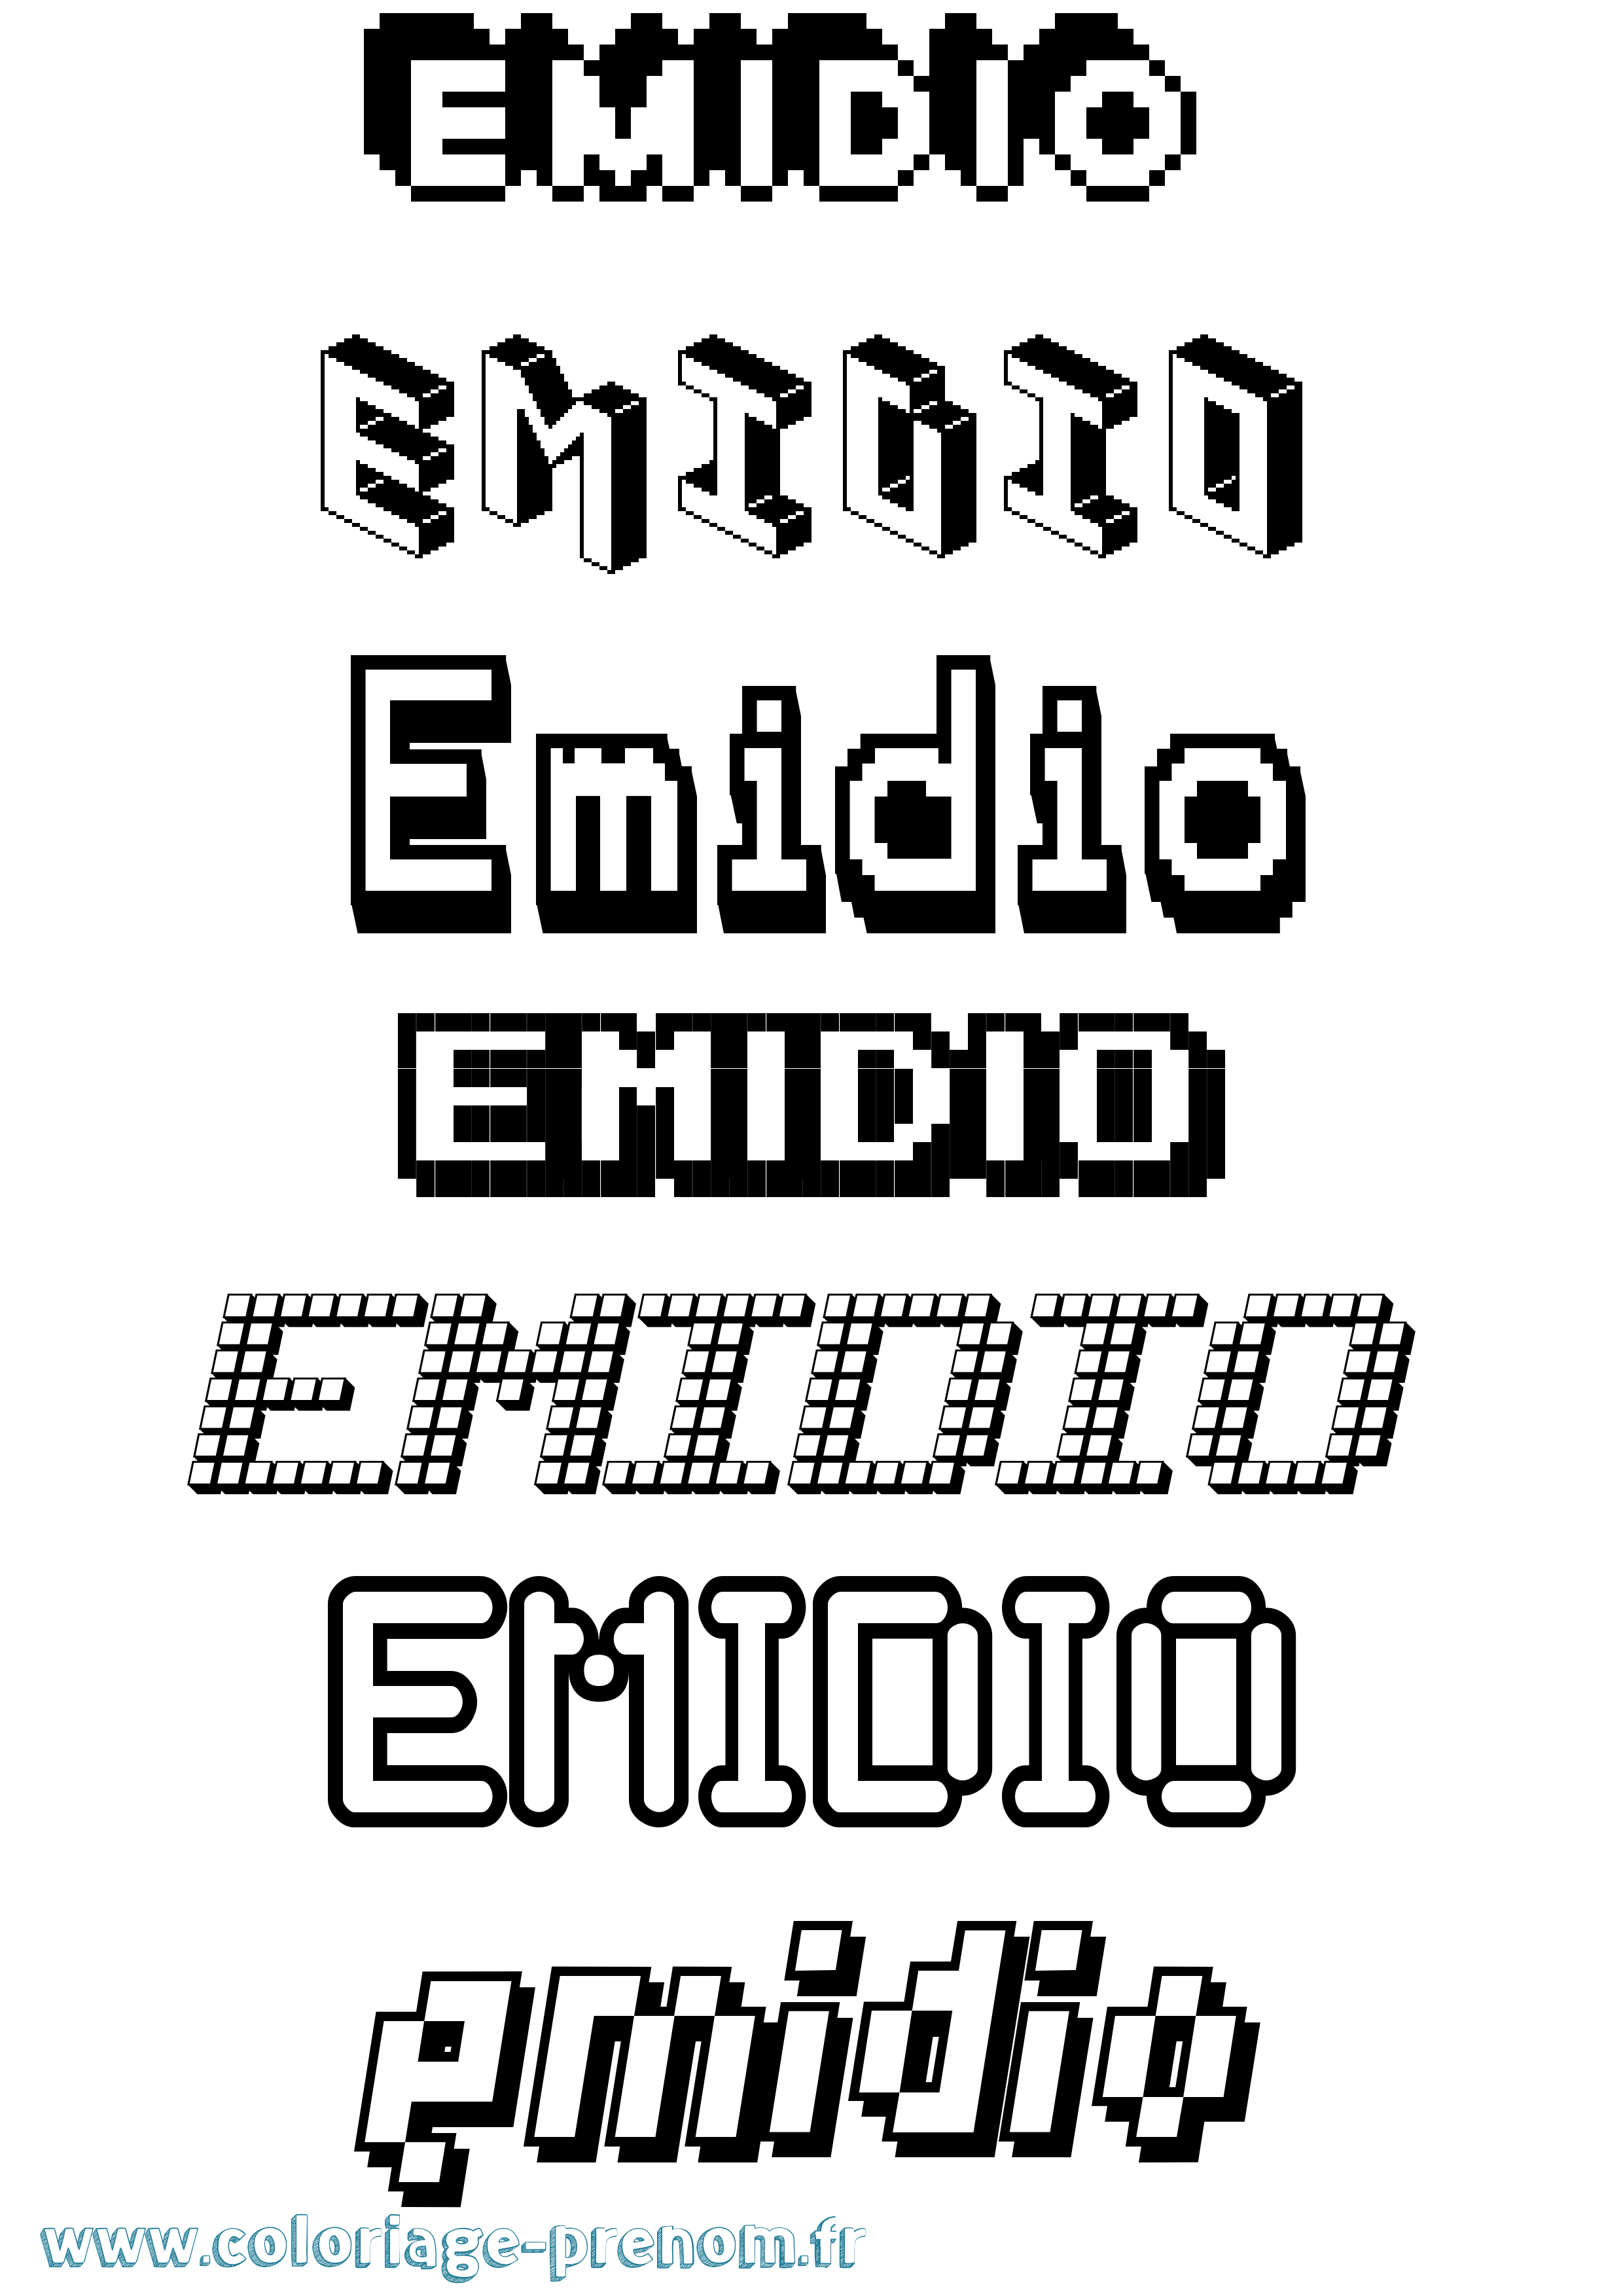 Coloriage prénom Emidio Pixel